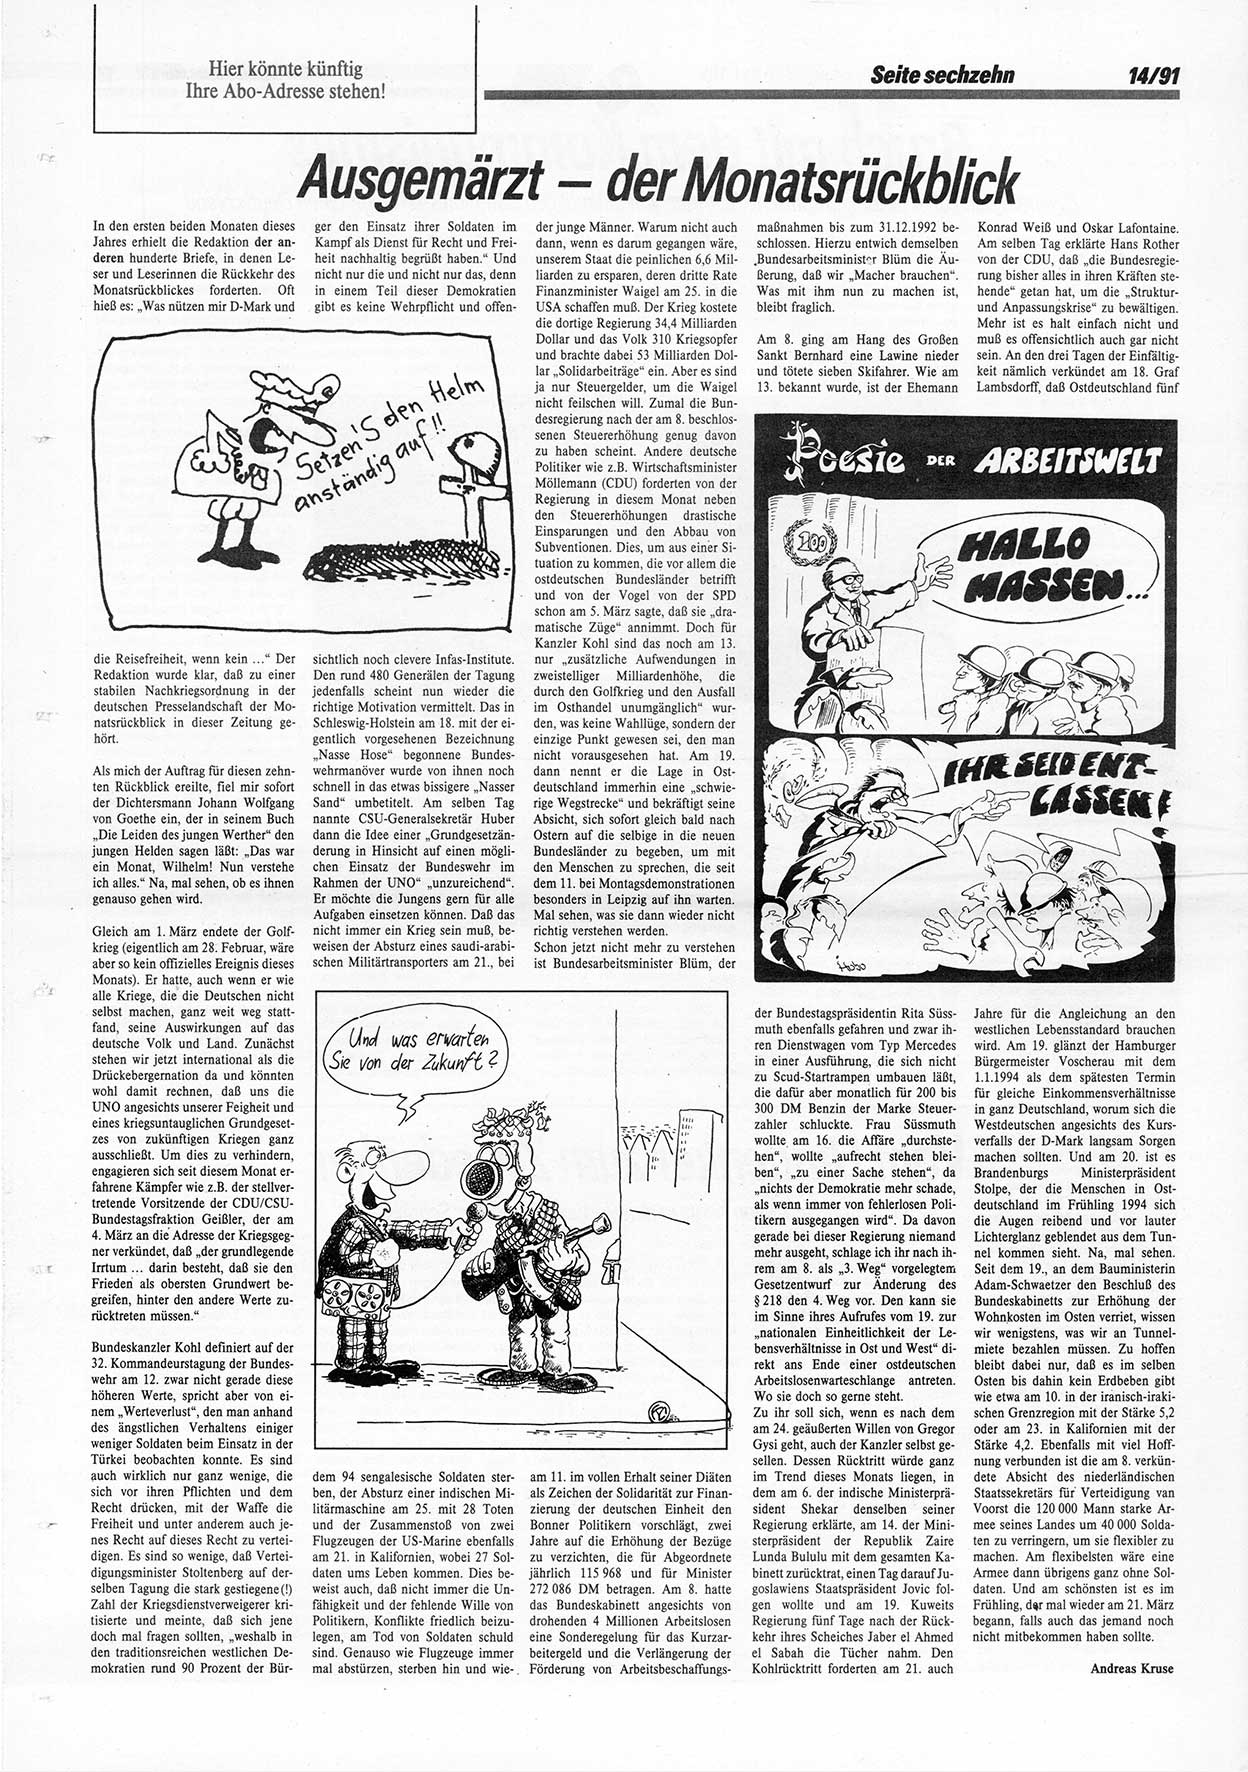 Die Andere, Unabhängige Wochenzeitung für Politik, Kultur und Kunst, Ausgabe 14 vom 3.4.1991, Seite 16 (And. W.-Zg. Ausg. 14 1991, S. 16)